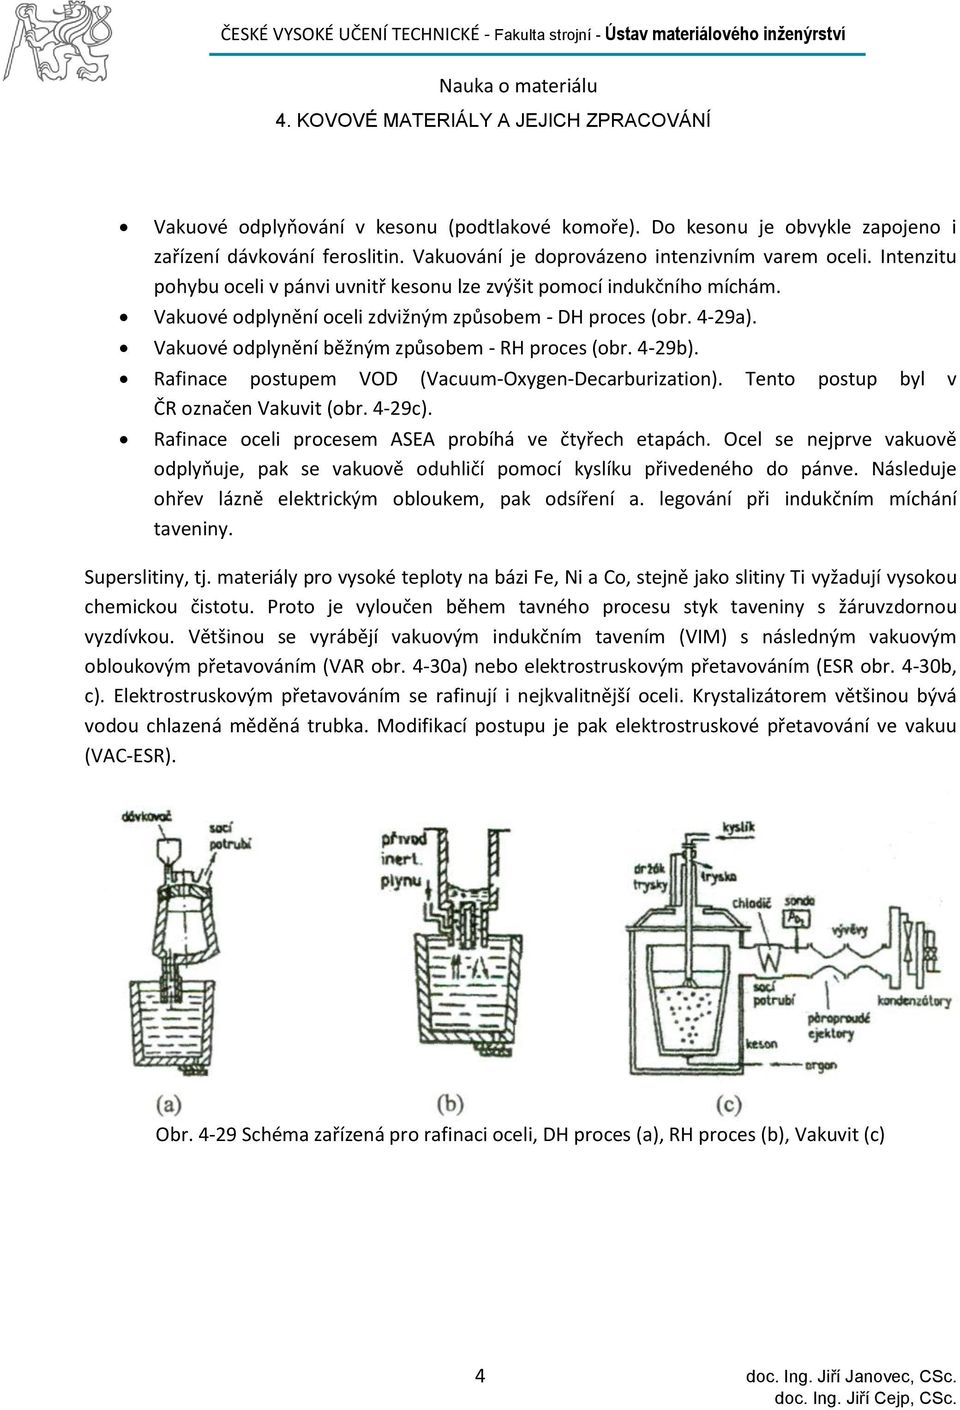 Vakuové odplynění běžným způsobem - RH proces (obr. 4-29b). Rafinace postupem VOD (Vacuum-Oxygen-Decarburization). Tento postup byl v ČR označen Vakuvit (obr. 4-29c).